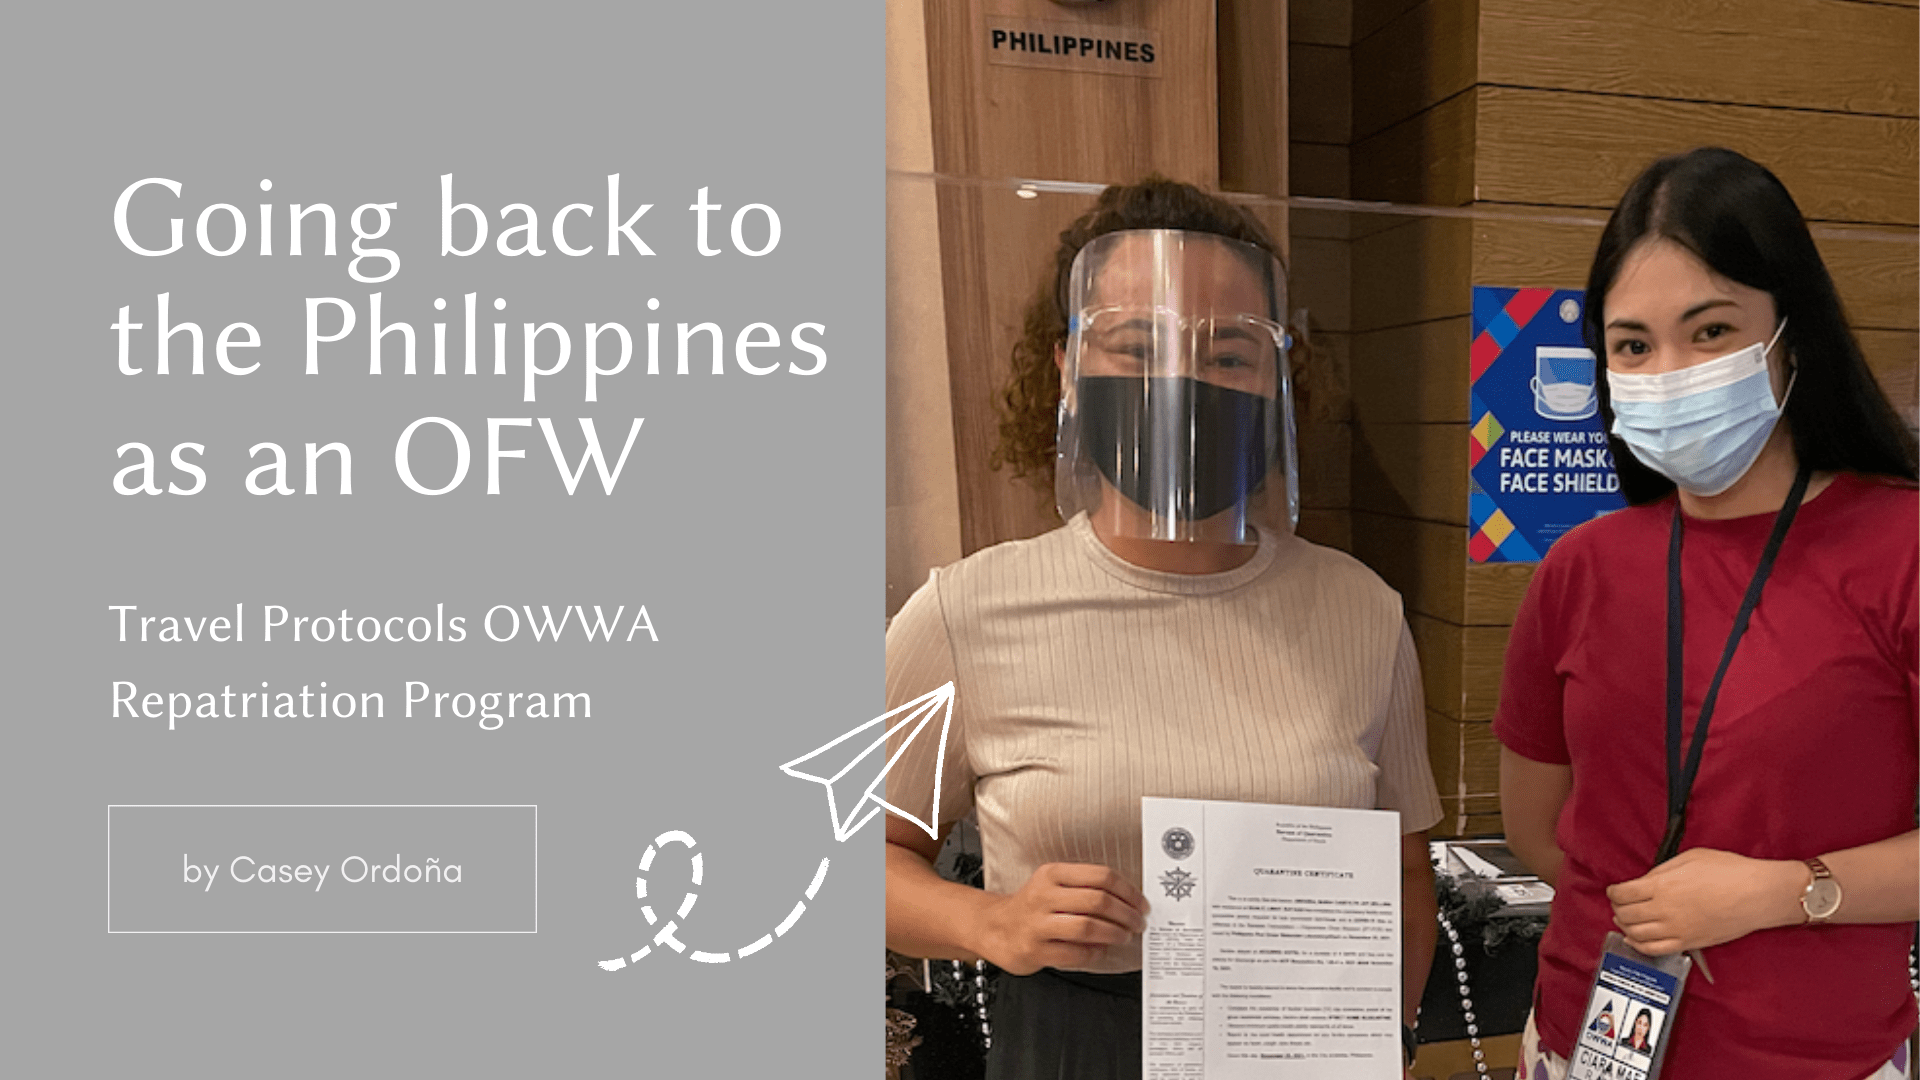 OFW Pag-uwi sa Pilipinas mga Proseso, Paghahanda, at mga Babayaran (Going back to the Philippines as an OFW)